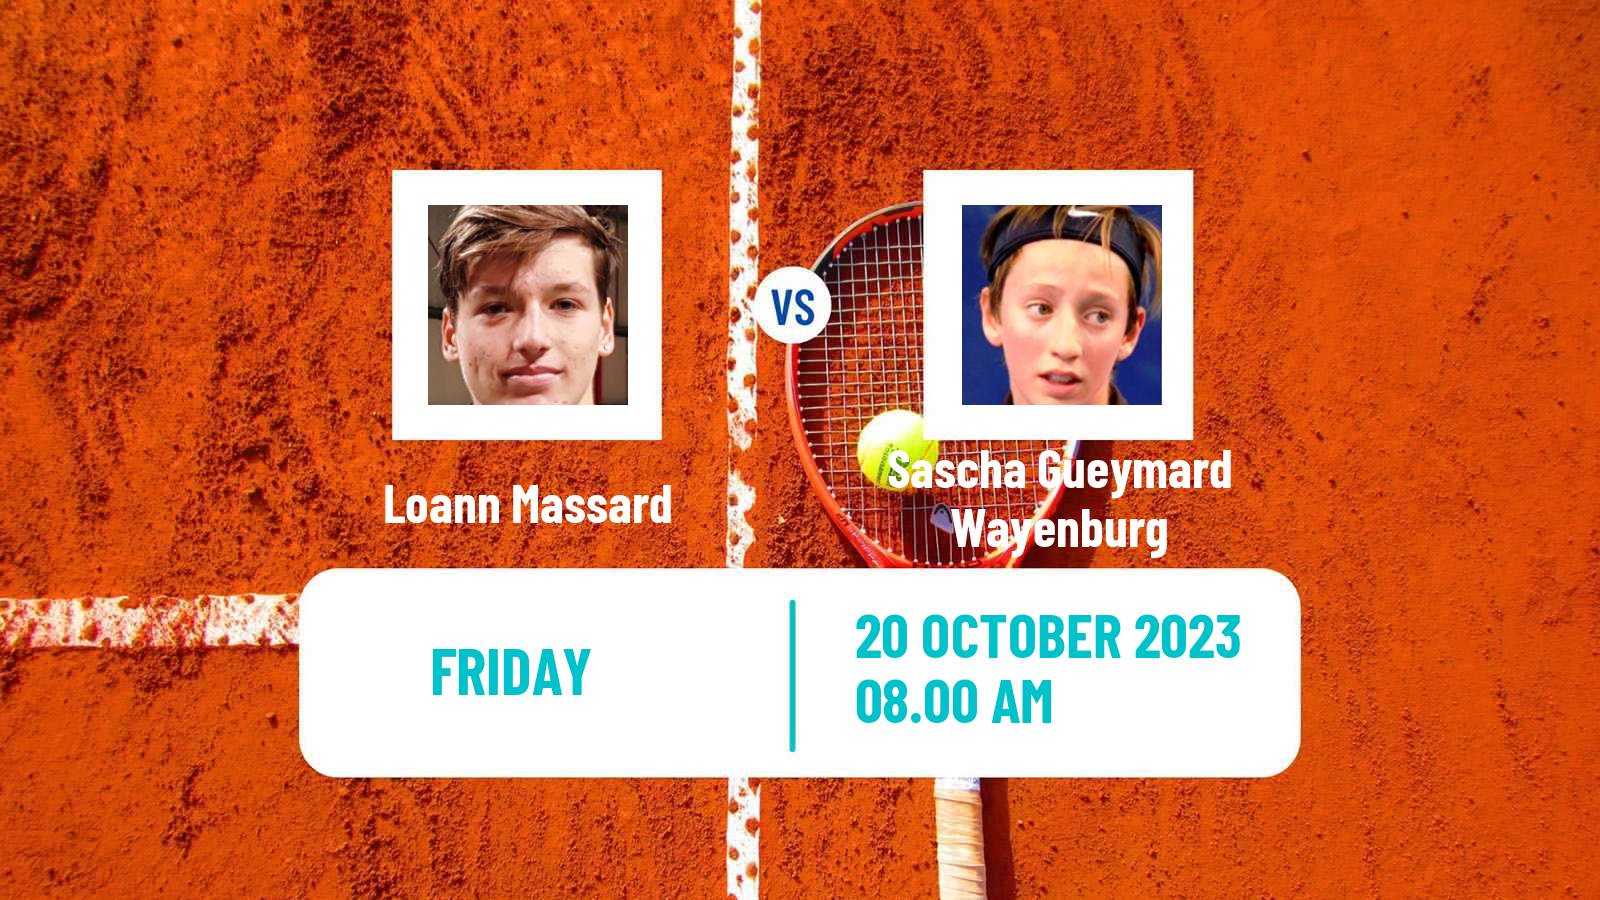 Tennis ITF M15 Villers Les Nancy Men Loann Massard - Sascha Gueymard Wayenburg